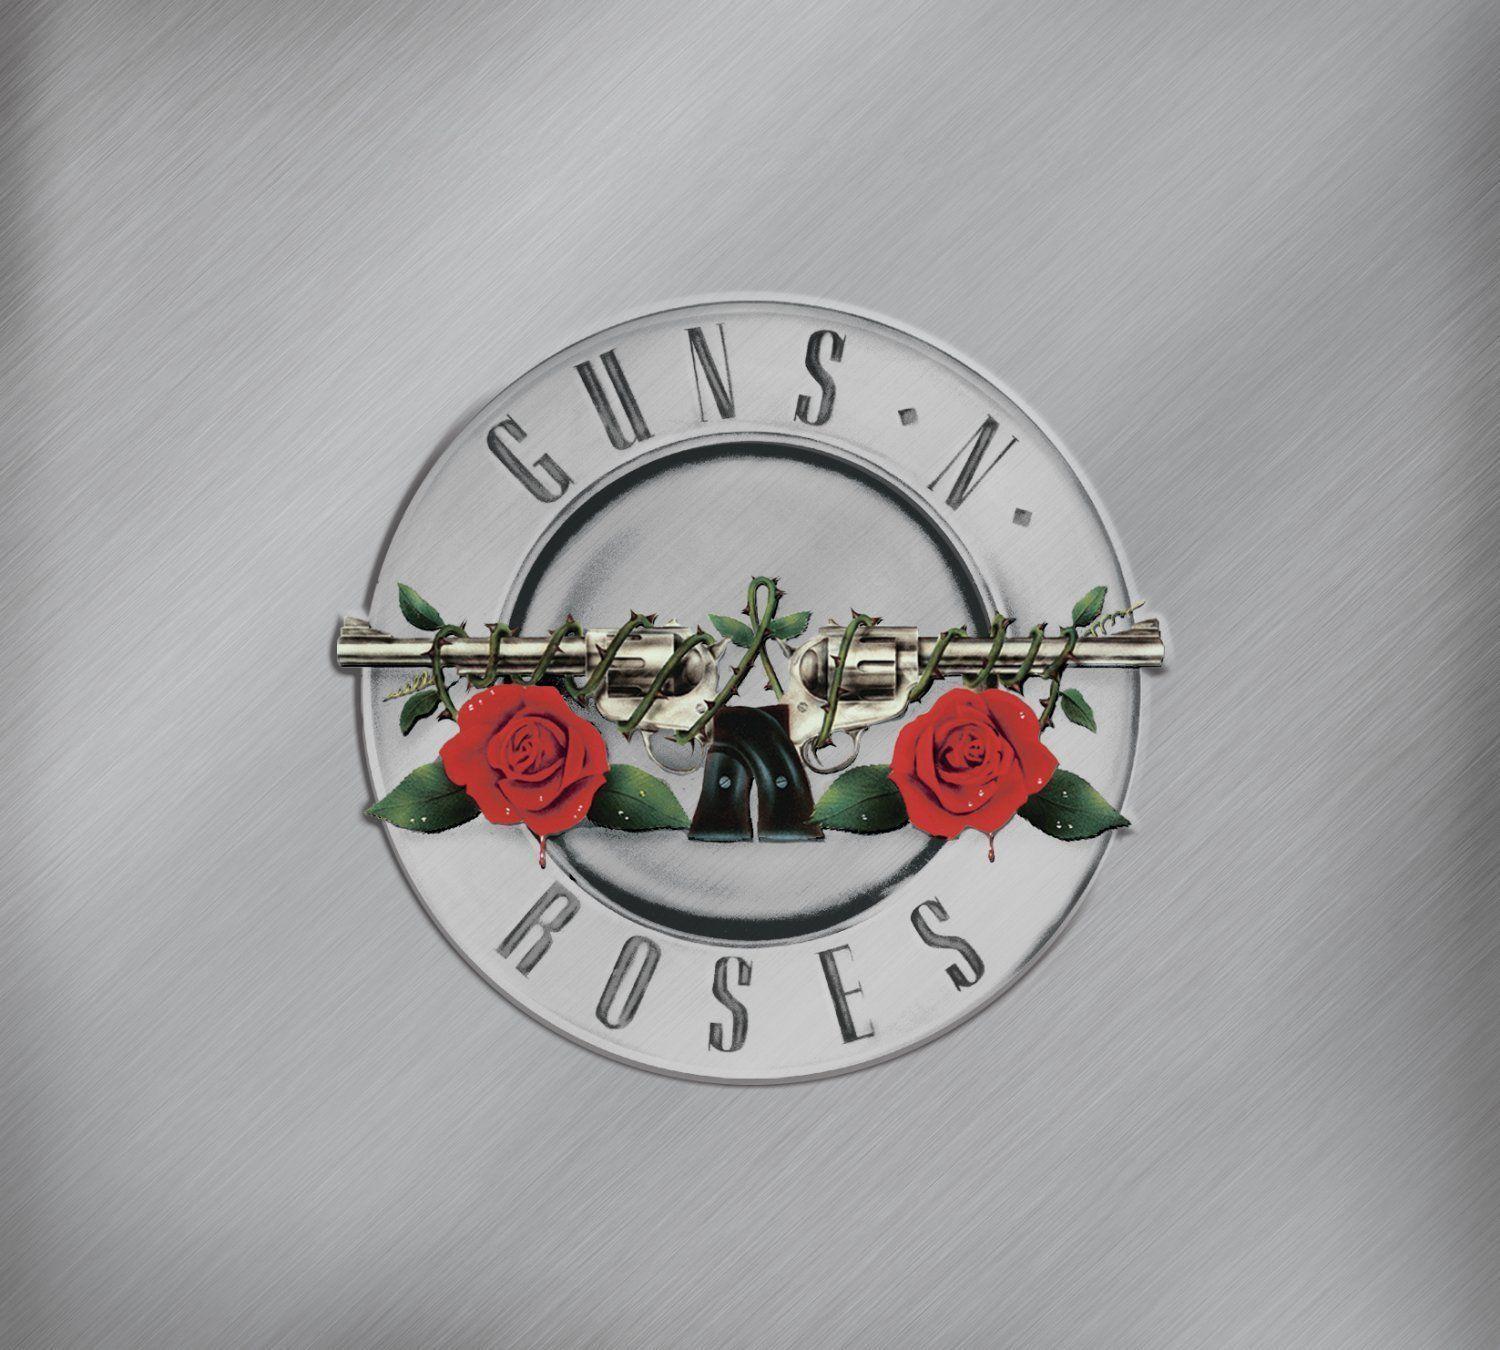 Guns N' Roses HD Wallpaper